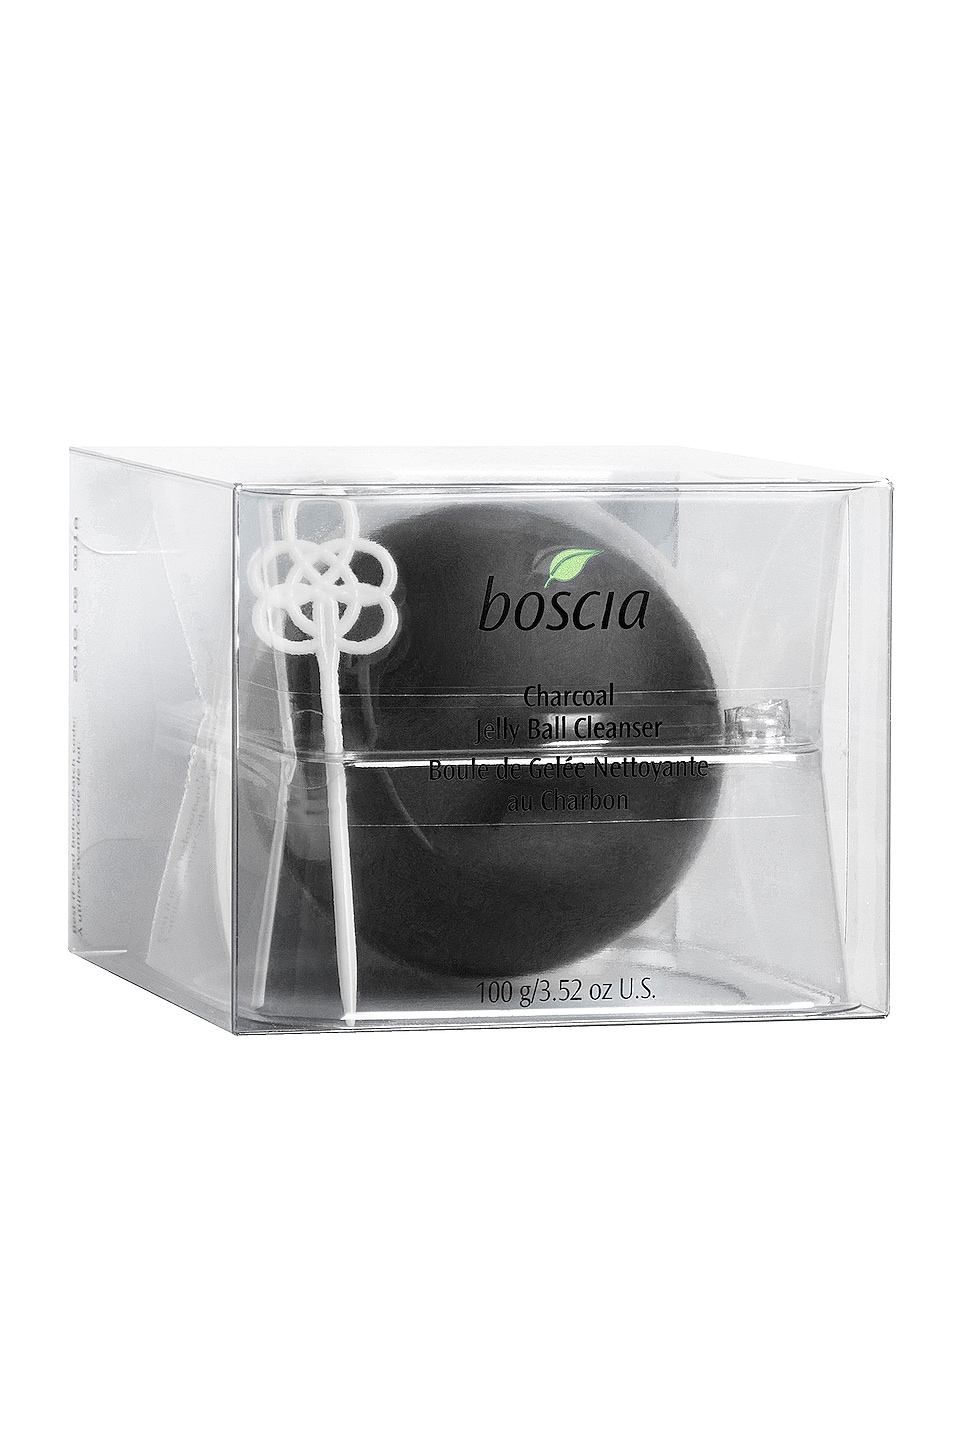 BOSCIA BOSCIA CHARCOAL JELLY BALL CLEANSER IN BEAUTY: NA.,BOSC-WU11